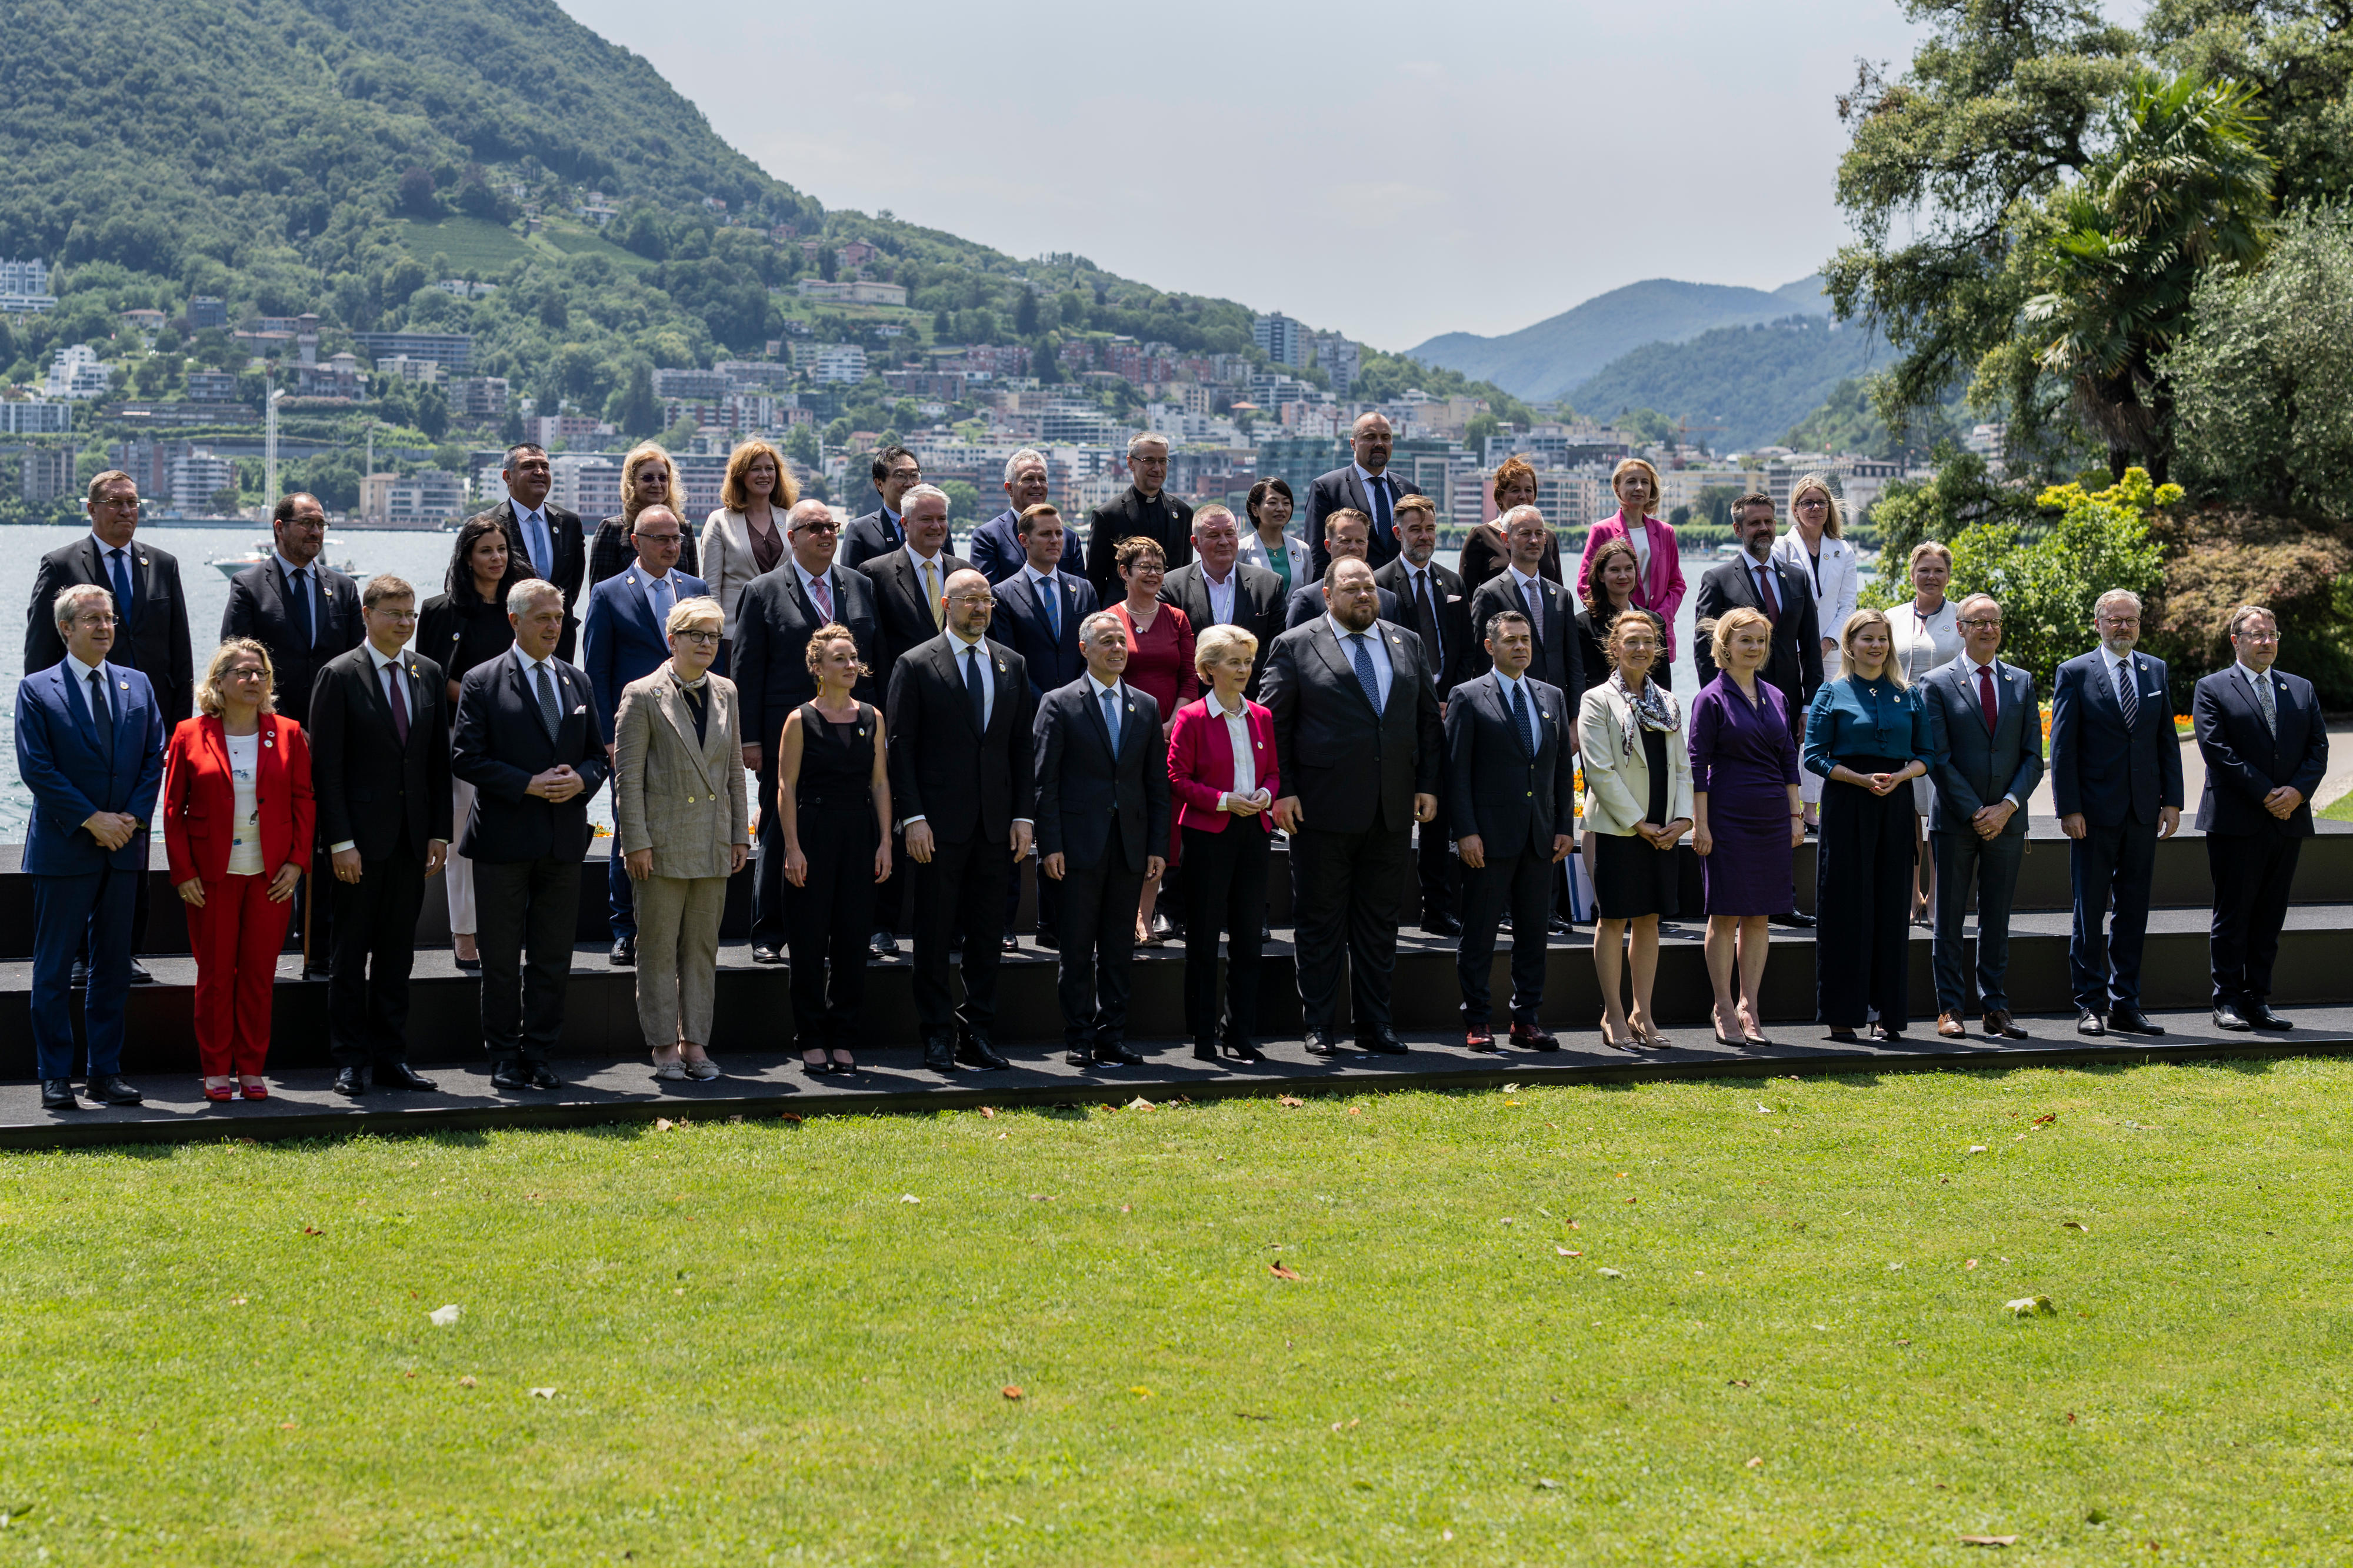 Traditionelles "Familienfoto" der Delegationsleitungen während der Ukraine Recovery Conference (URC) am Montag, 4. Juli 2022, in Lugano, Schweiz